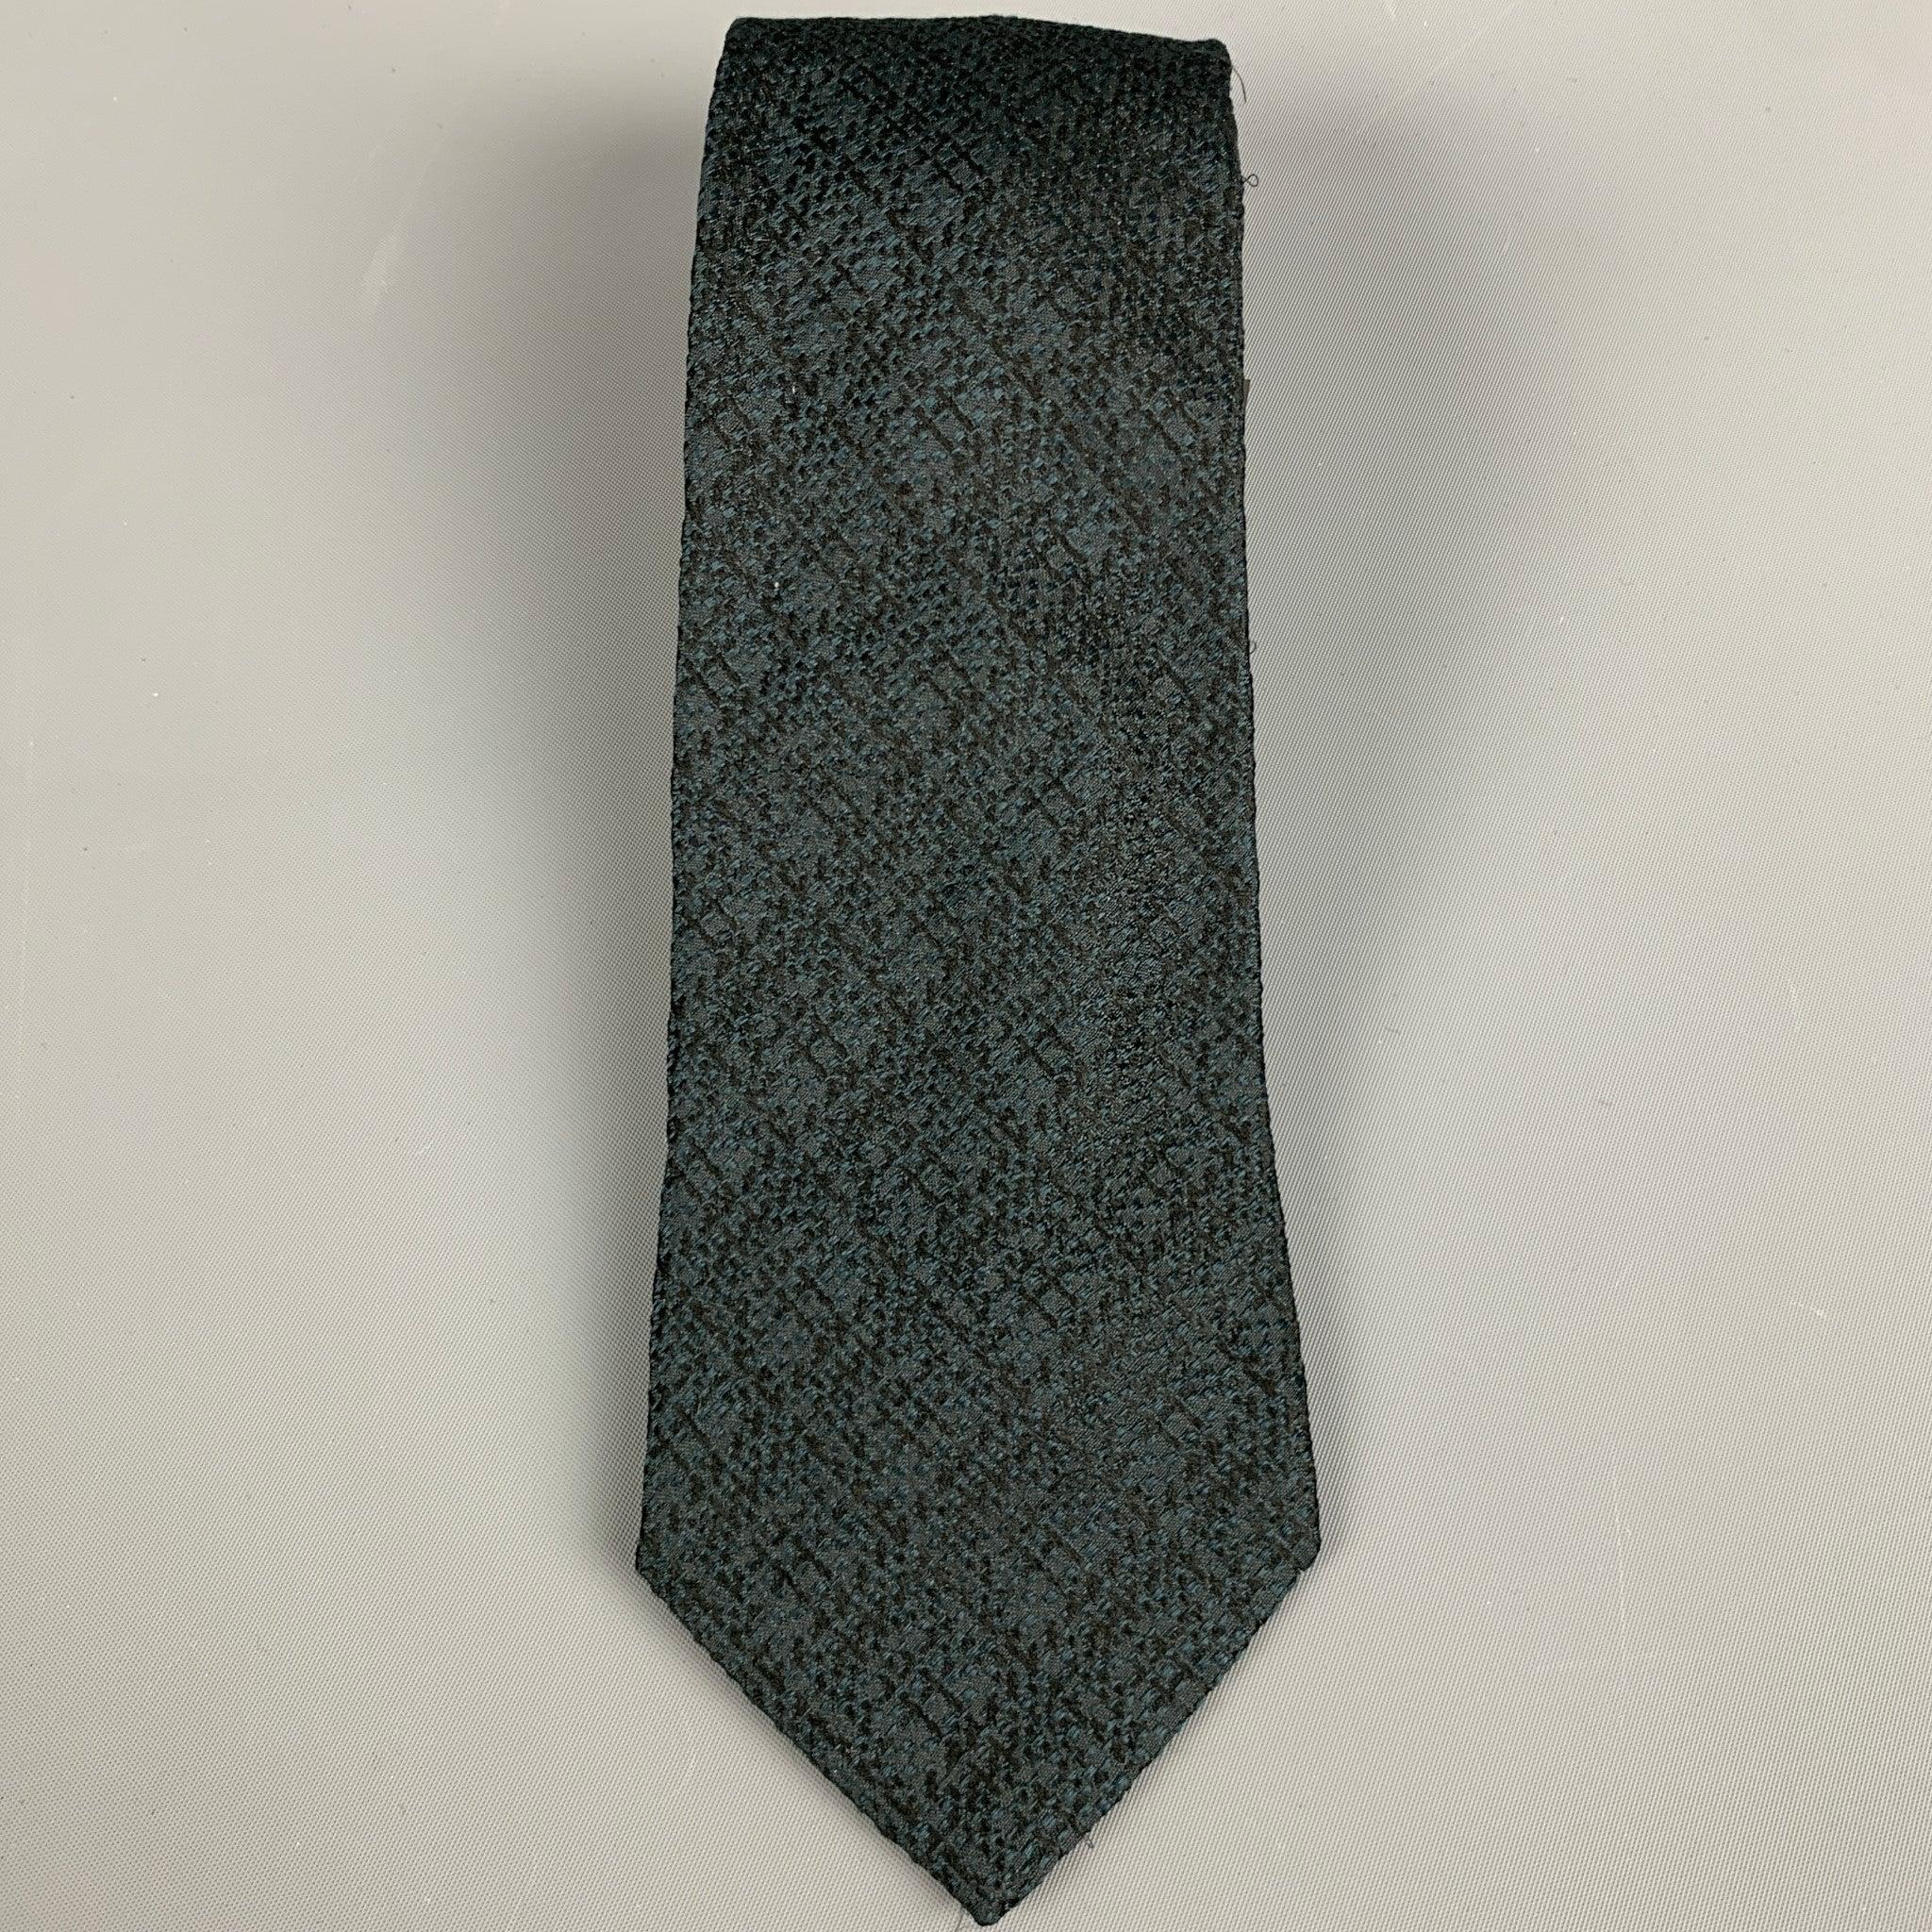 ETRO
Krawatte aus grüner und schwarzer Seide mit strukturierter Optik. Made in Italy Ausgezeichneter Pre-Owned Zustand. 

Abmessungen: 
  Breite: 3 Zoll Länge: 60 Zoll 
  
  
 
Referenz: 127995
Kategorie: Krawatte
Mehr Details
    
Marke: 